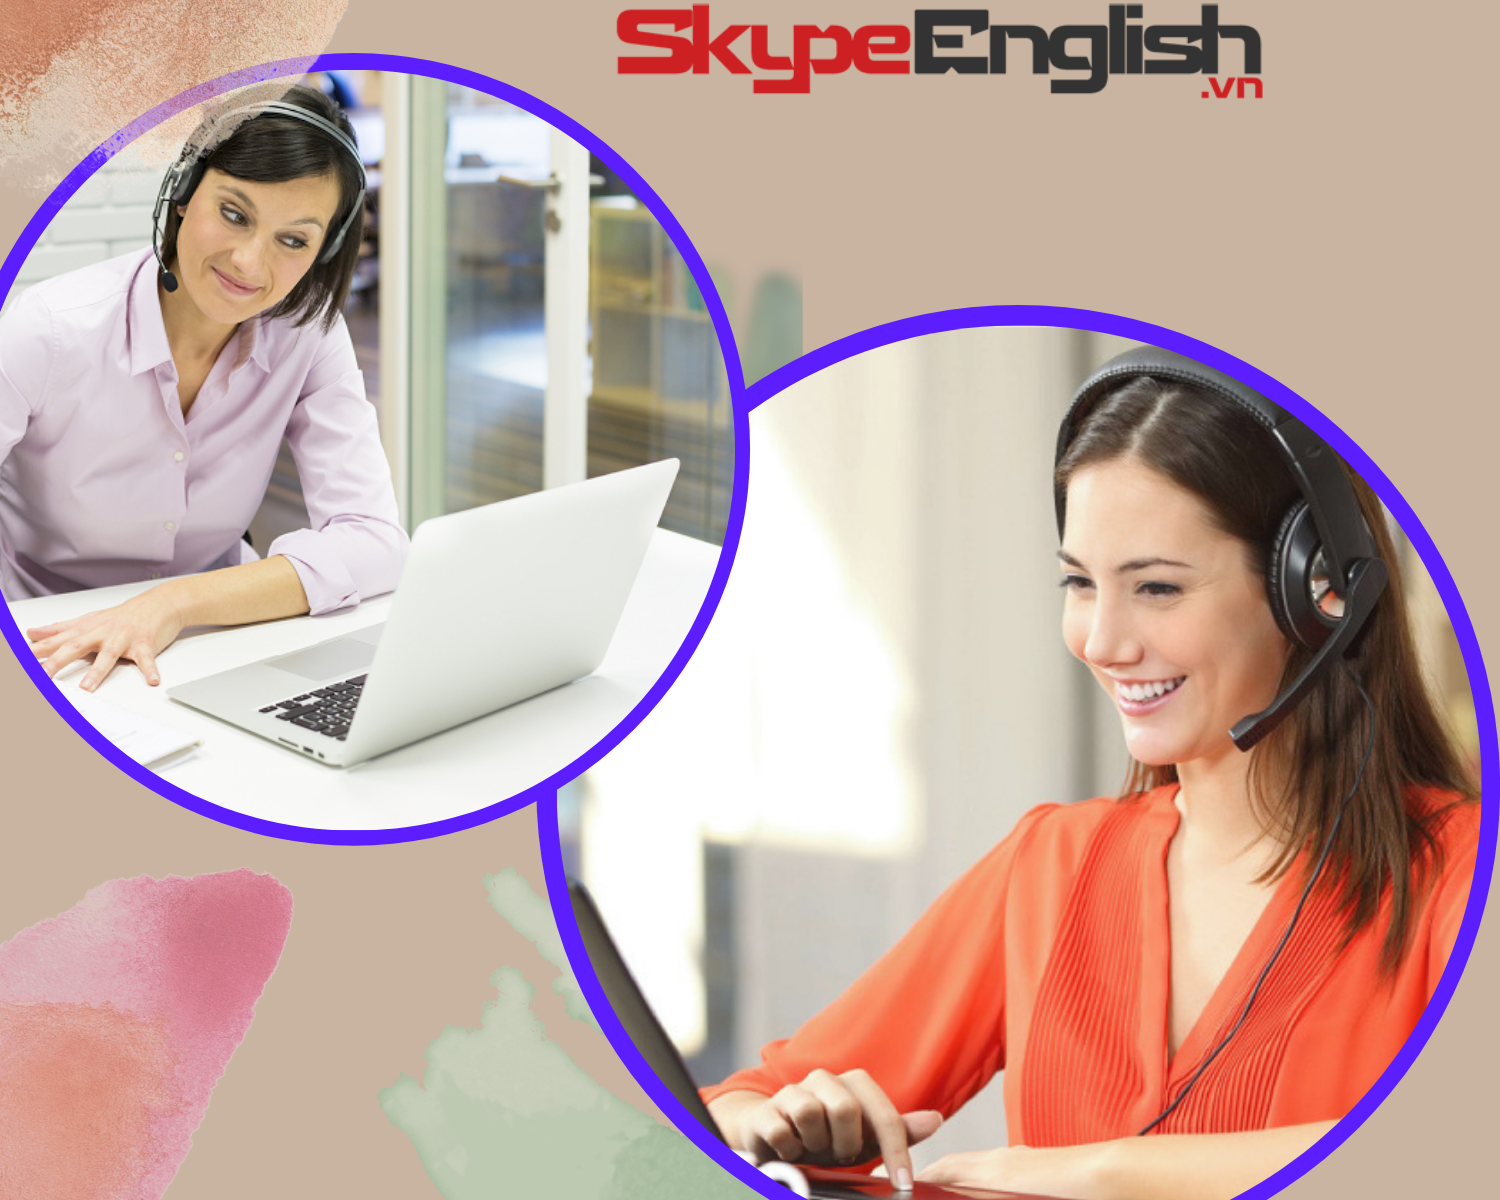 Học tiếng Anh online với người nước ngoài 1 kèm 1 chất lượng cao - Skype English